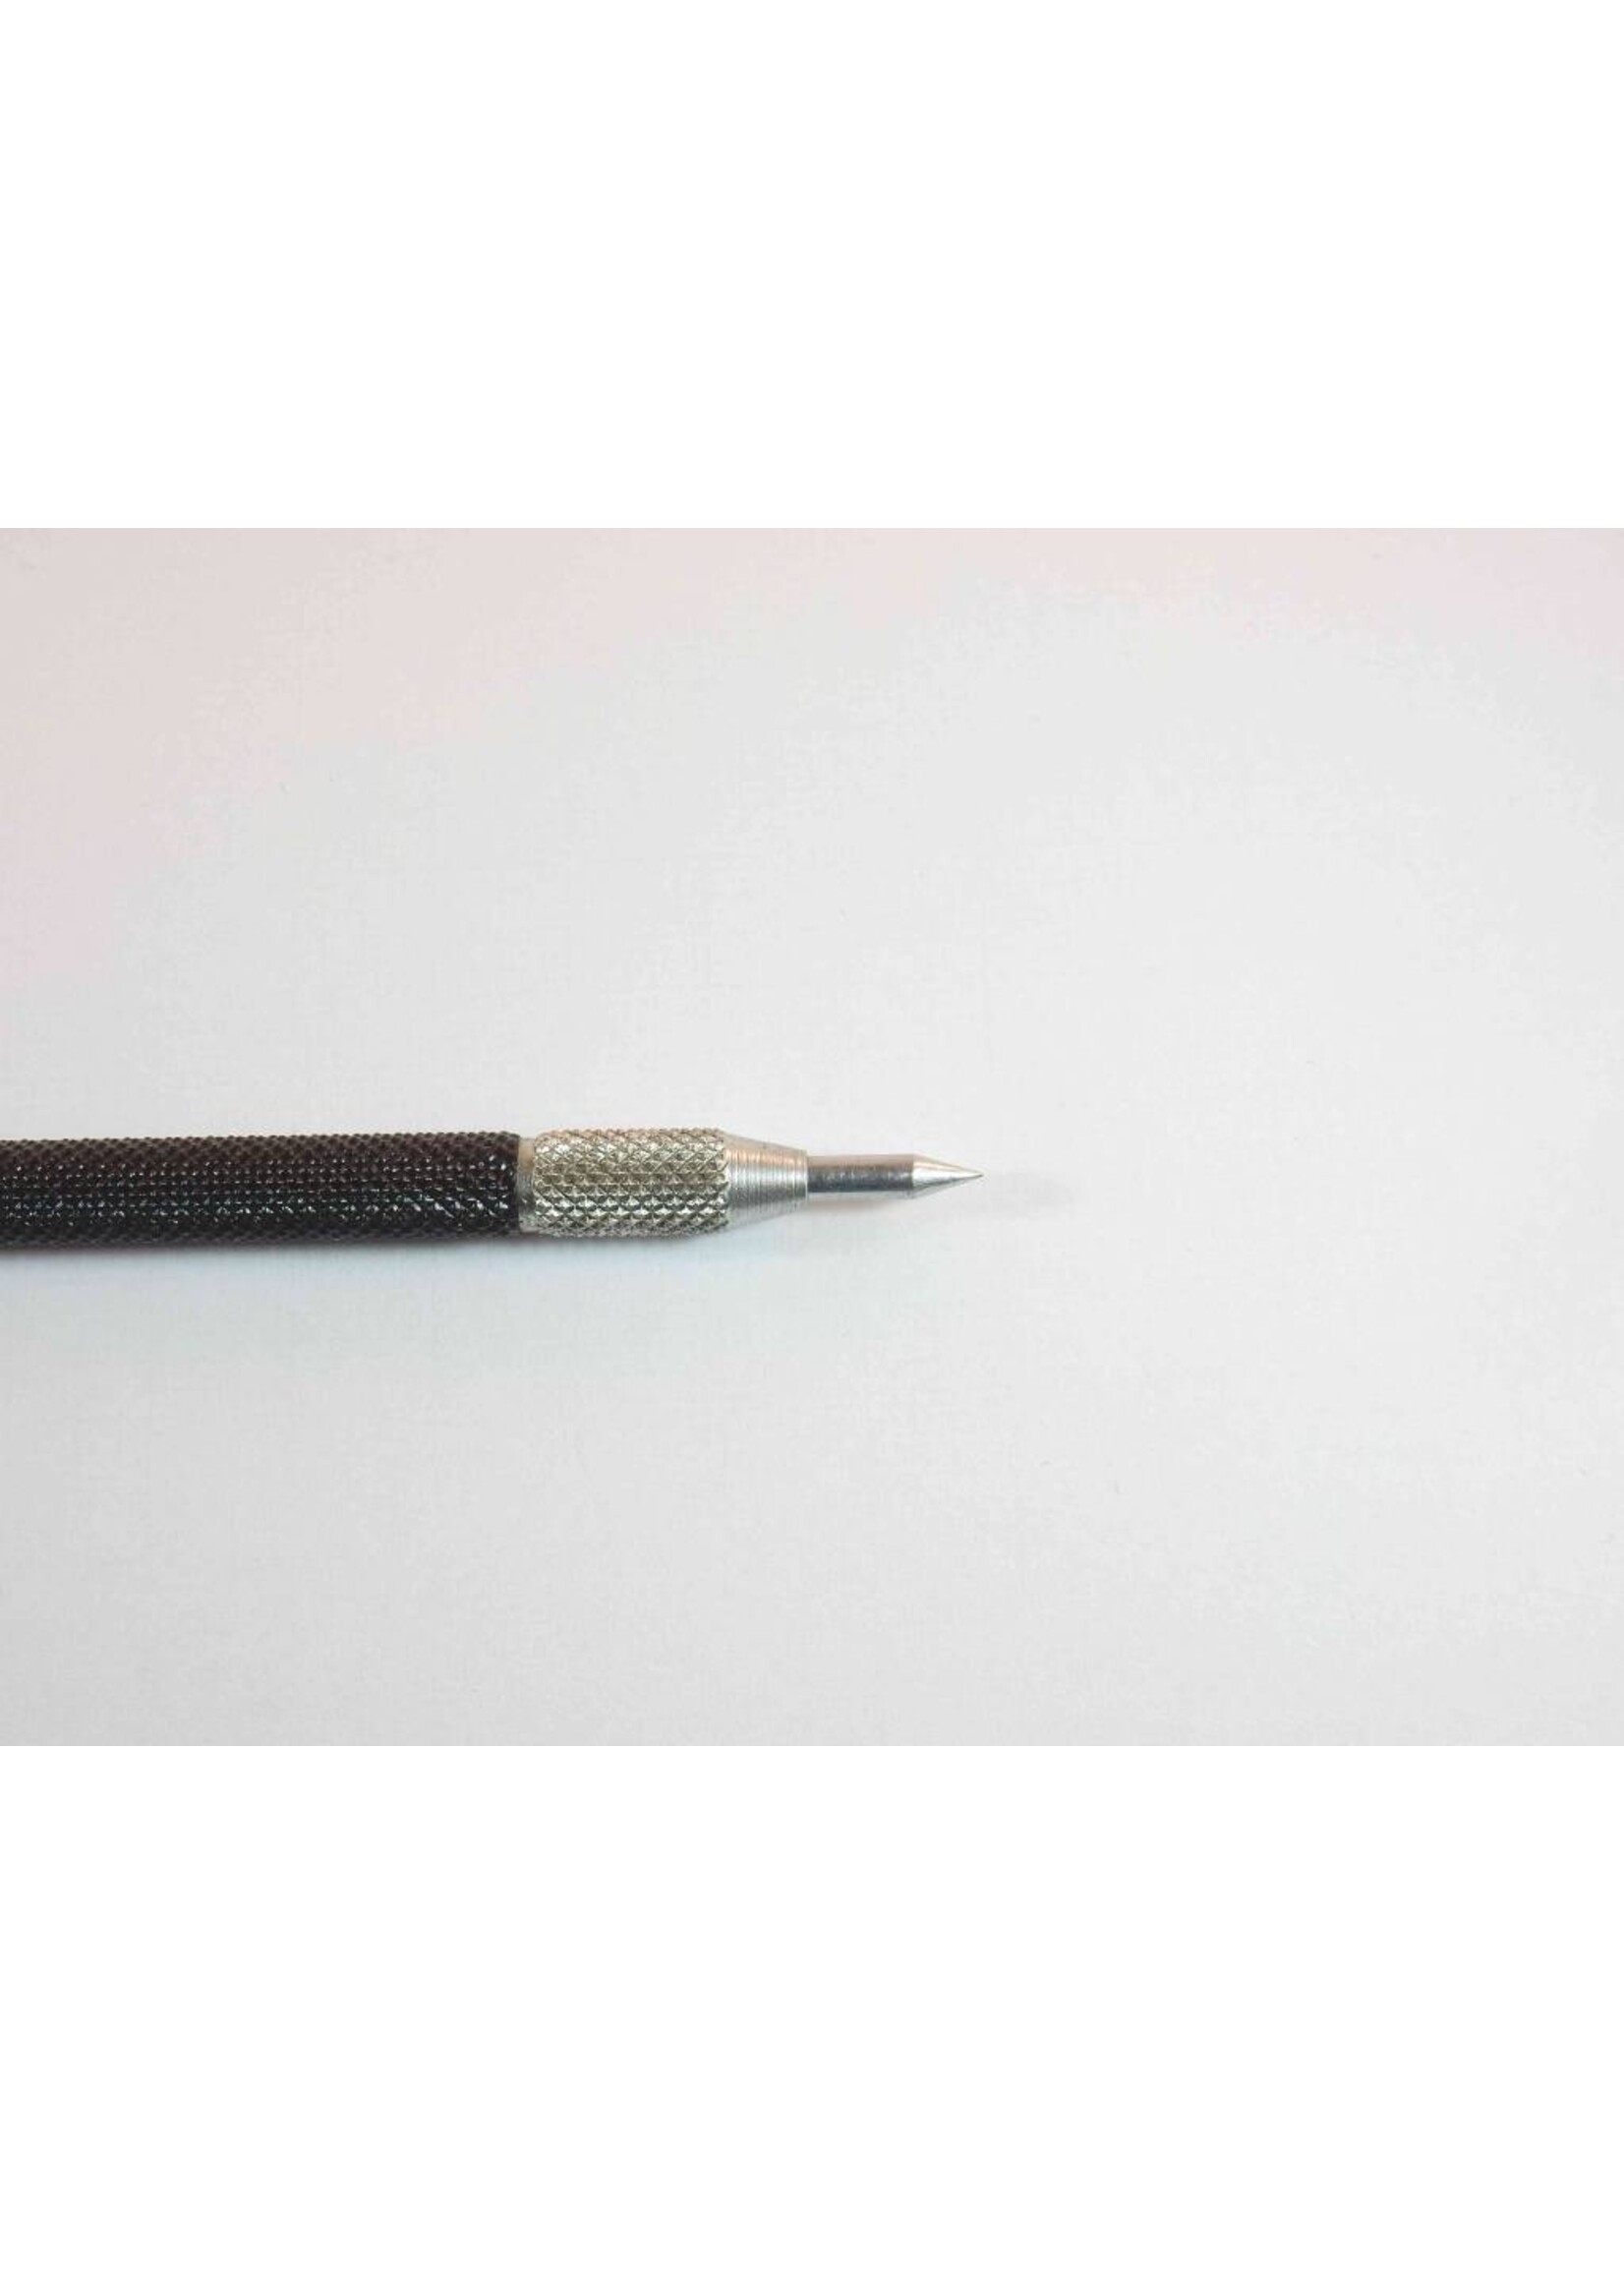 Scriber 145mm - Mark's Miniatures